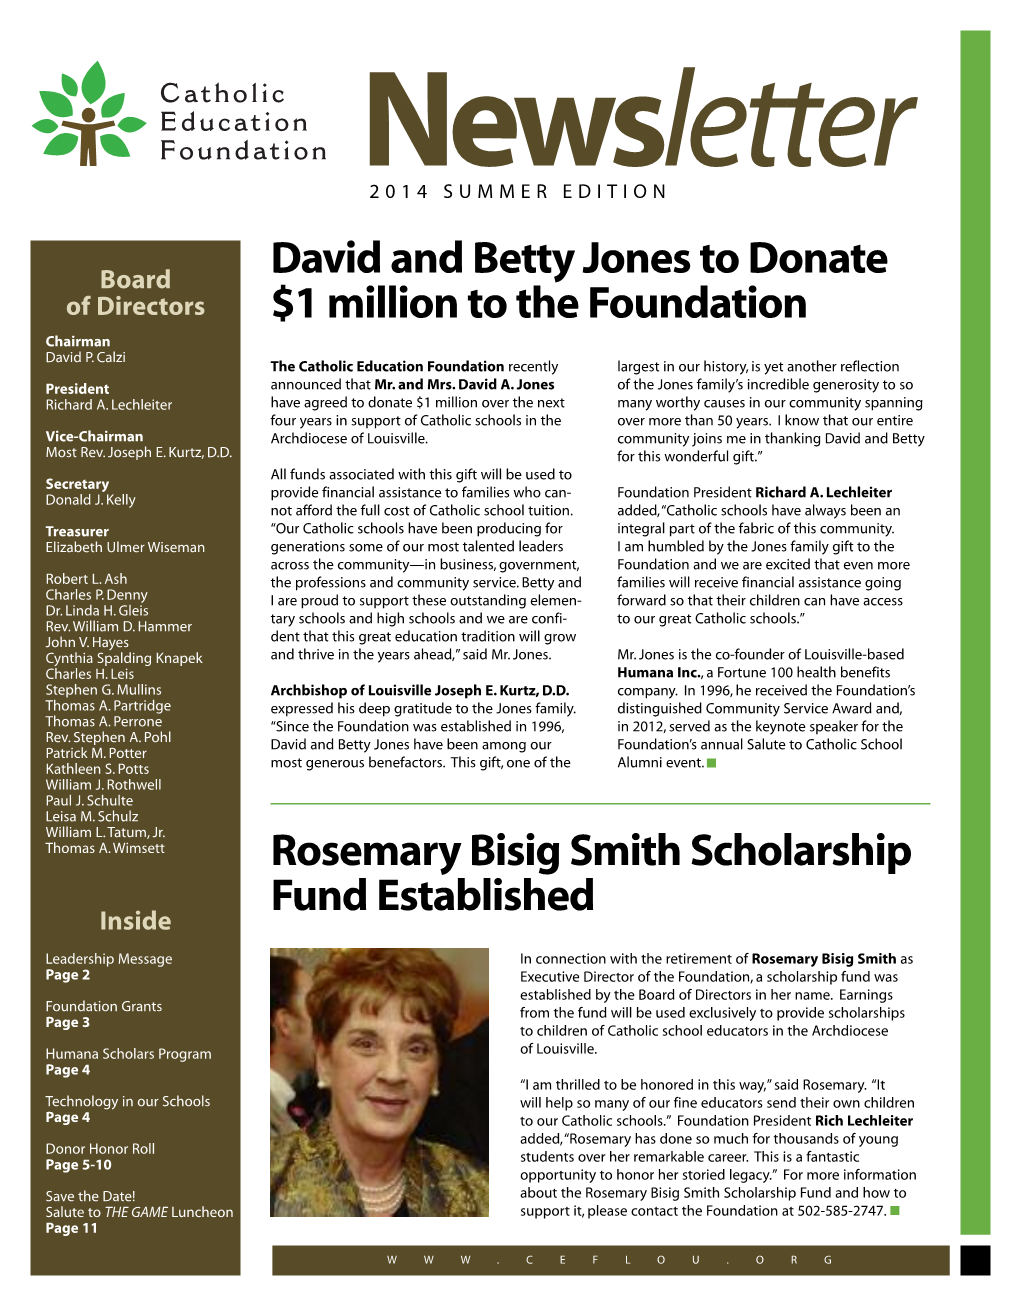 David and Betty Jones to Donate $1